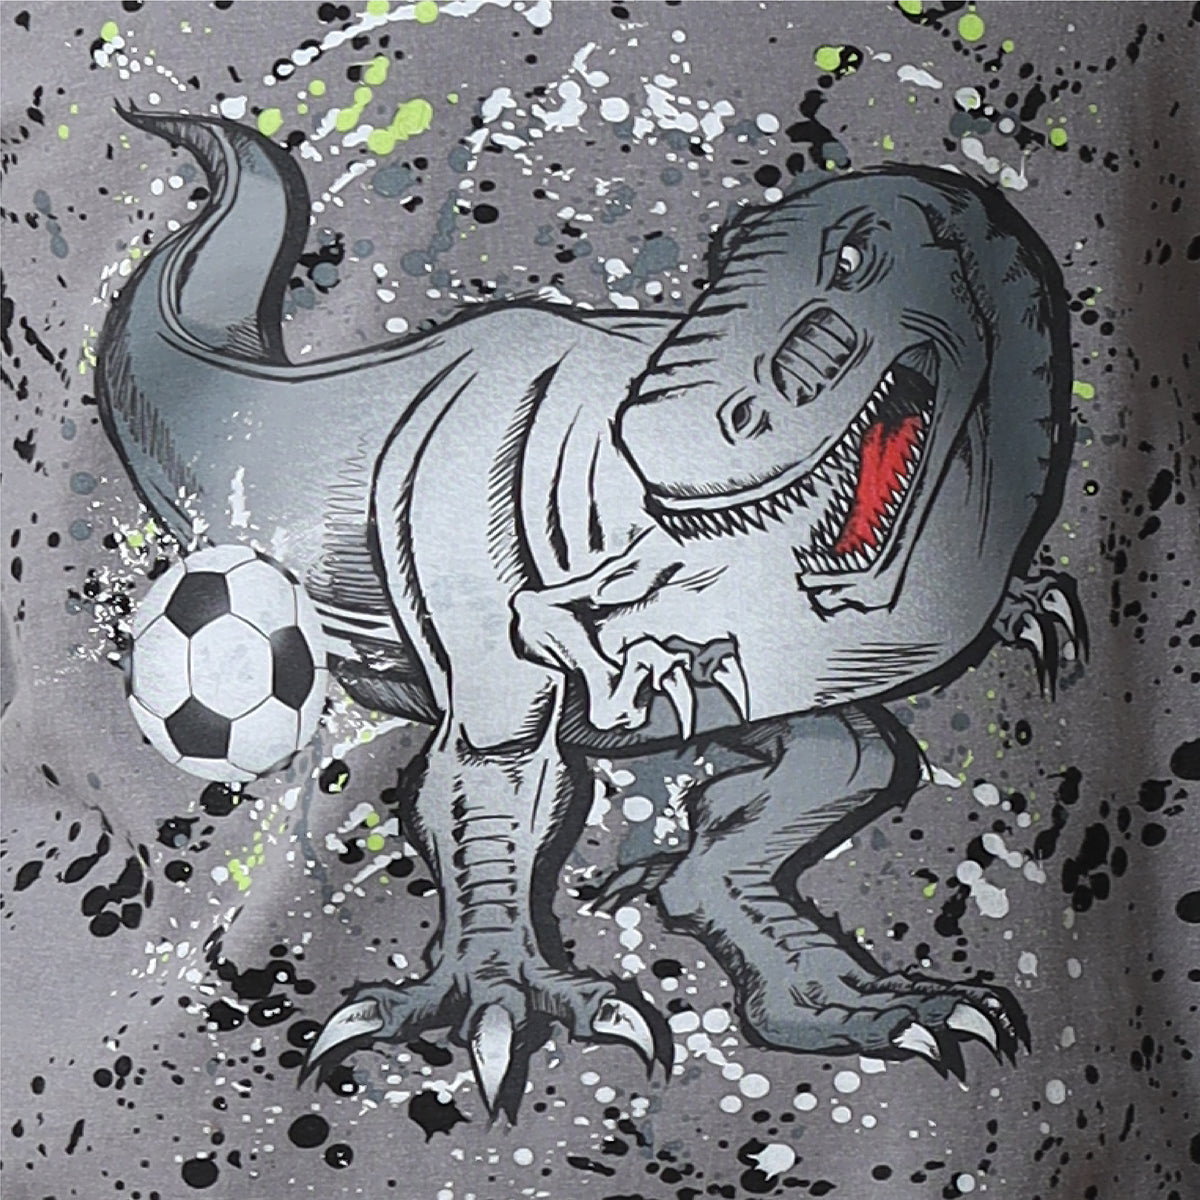 Boys Long Sleeve Dino / Football Pyjamas  